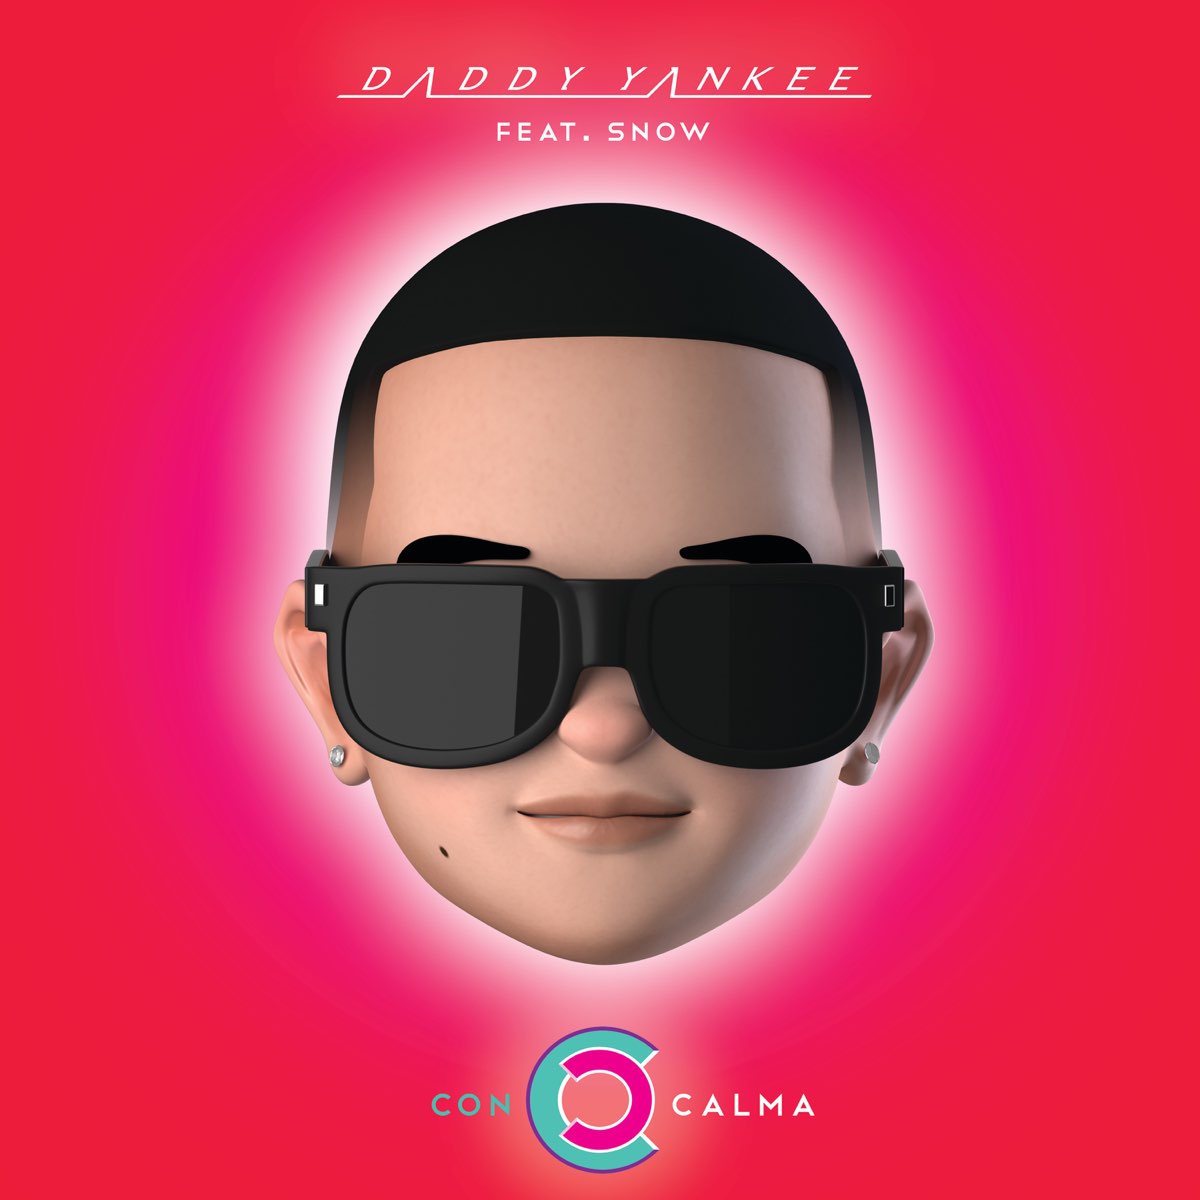 Con Calma (feat. Snow) - Single de Daddy Yankee en Apple Music